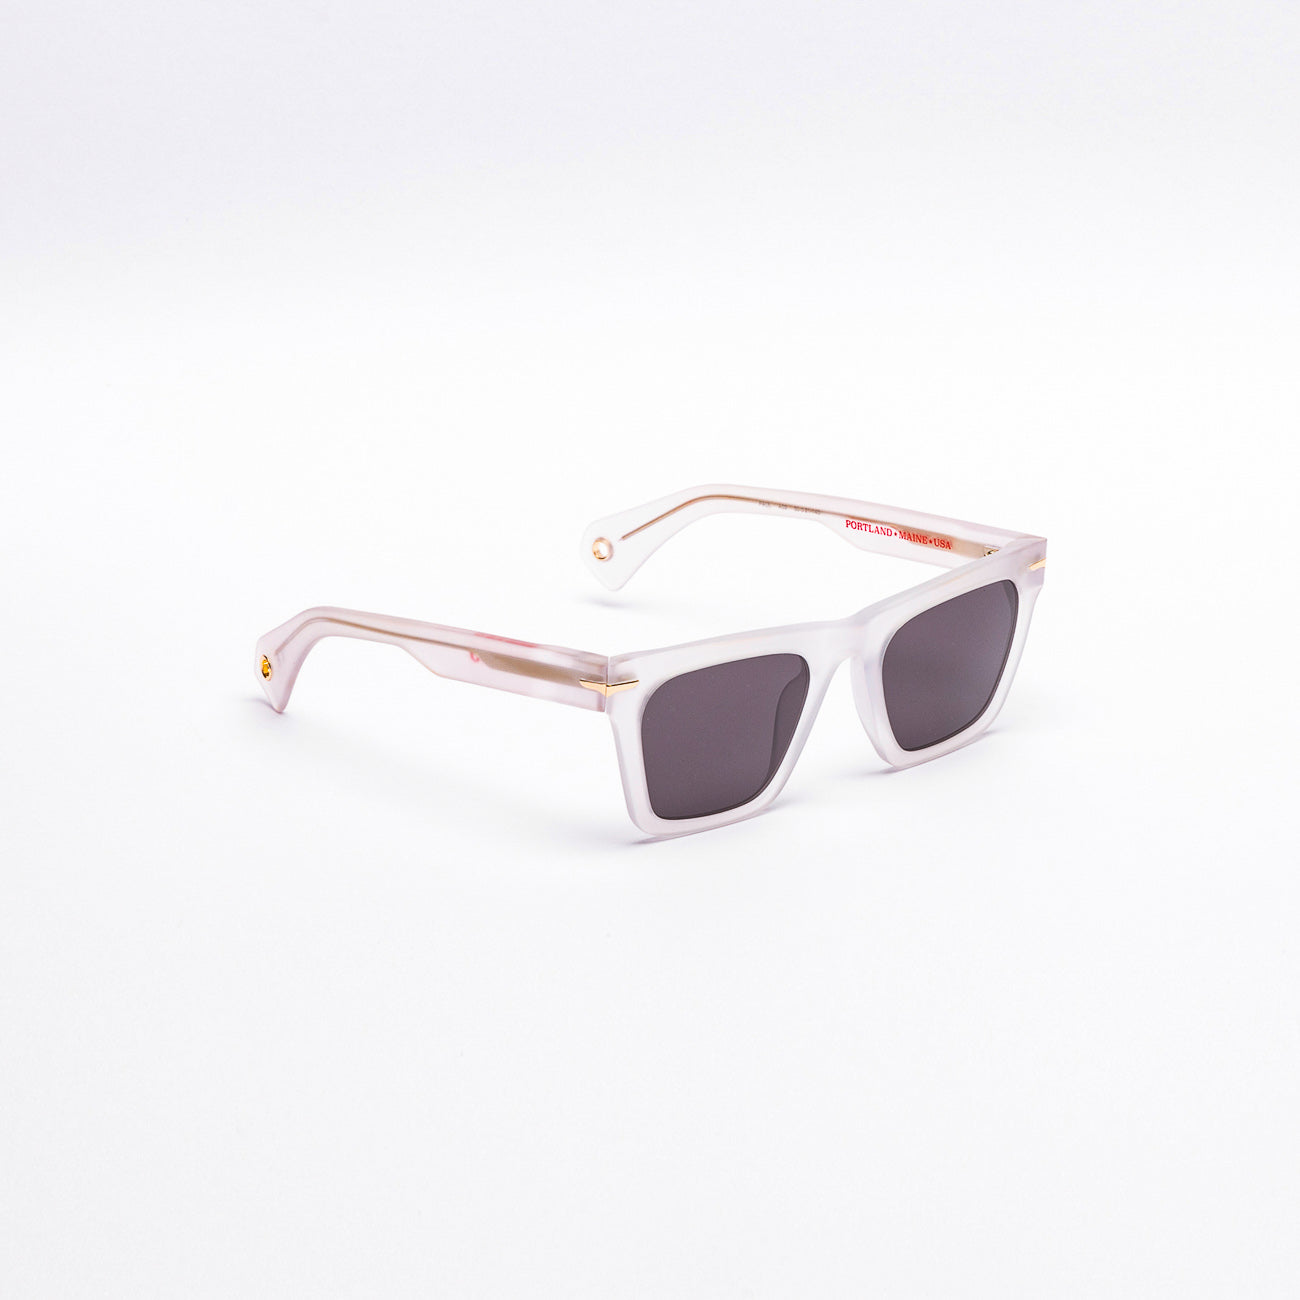 Sebago Paul sunglasses in transparent acetate